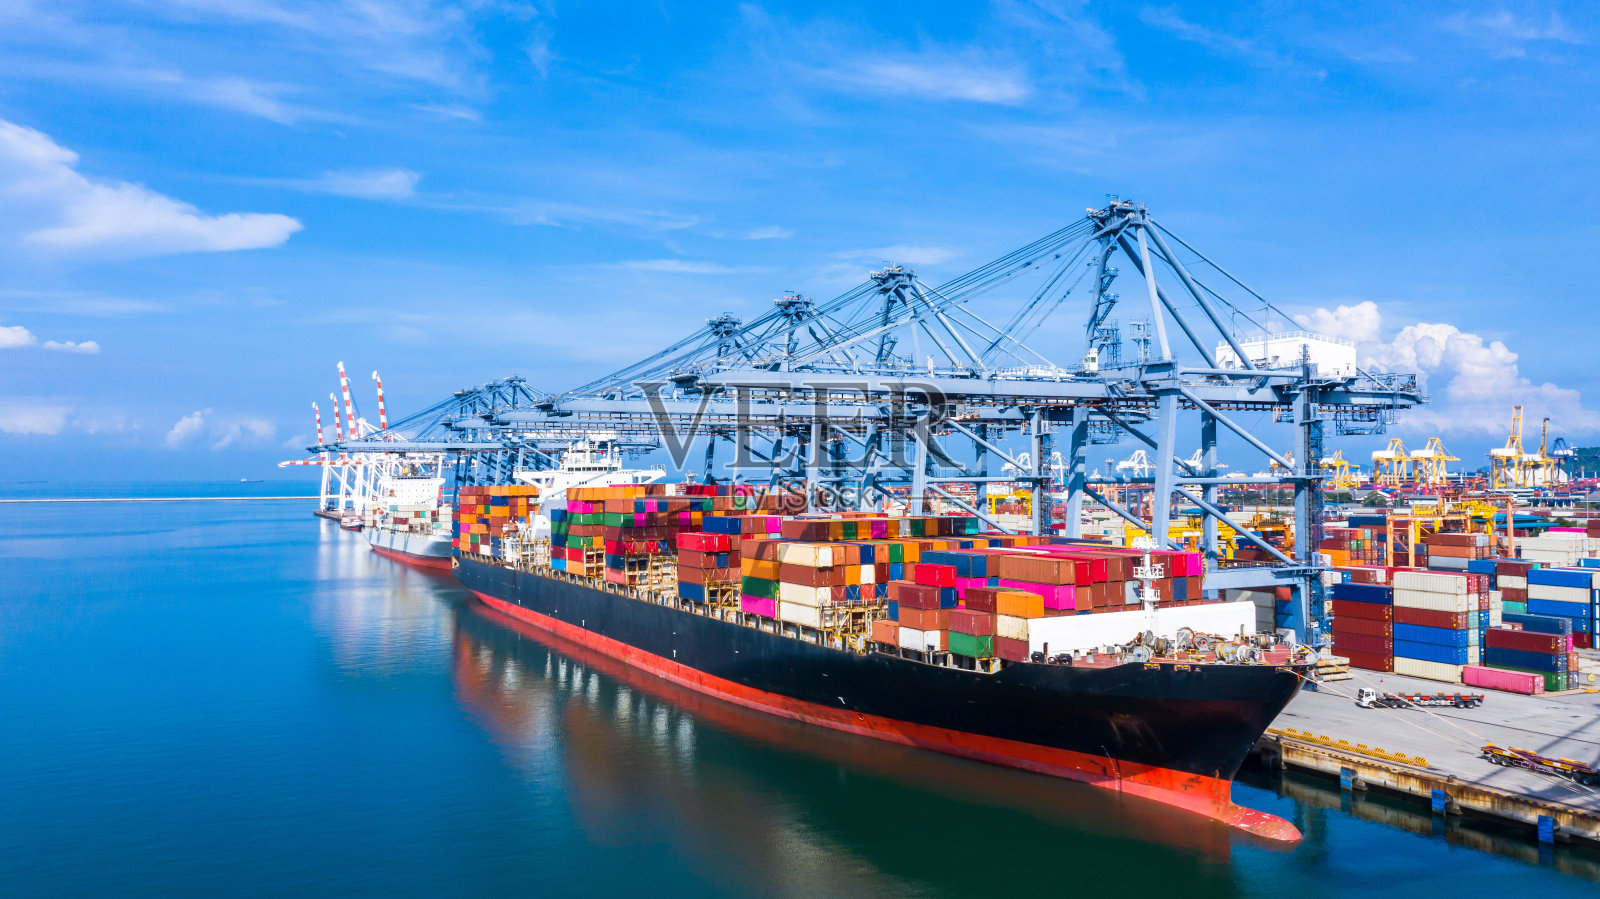 集装箱货轮在工业港口从事进出口业务,国际集装箱货轮在远洋运输。照片摄影